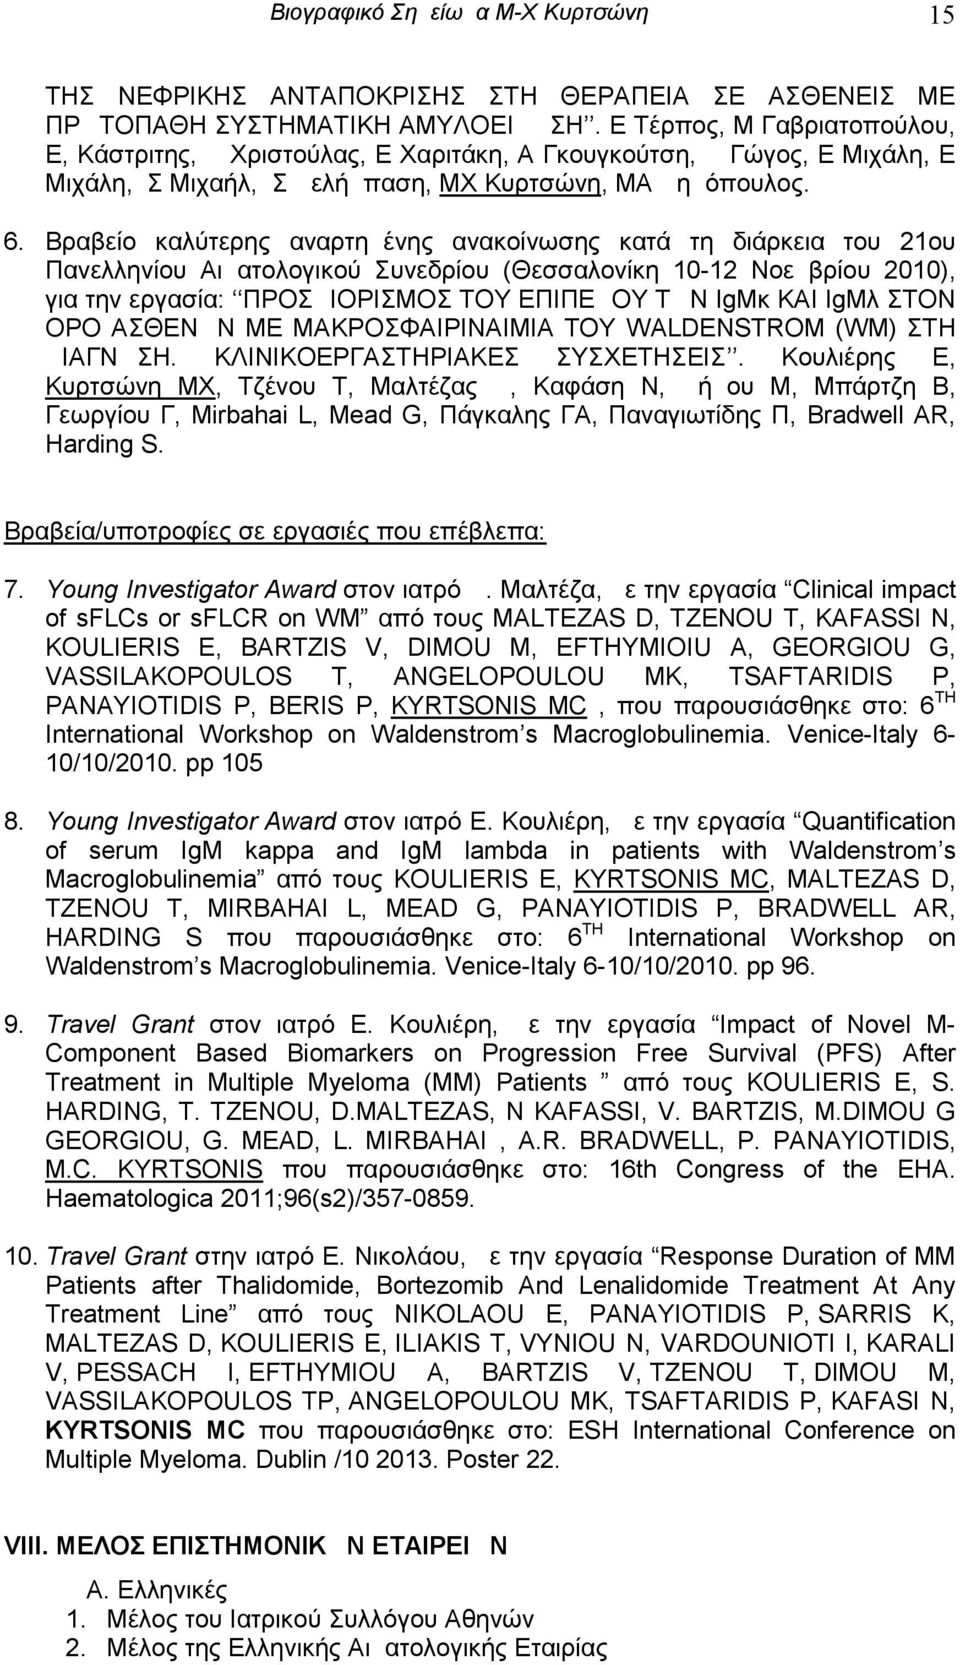 Βραβείο καλύτερης αναρτημένης ανακοίνωσης κατά τη διάρκεια του 21ου Πανελληνίου Αιματολογικού Συνεδρίου ( Θεσσαλονίκη 10-12 Νοεμβρίου 2010), για την εργασία: ΠΡΟΣΔΙΟΡΙΣΜΟΣ ΤΟΥ ΕΠΙΠΕΔΟΥ ΤΩΝ IgMκ ΚΑΙ